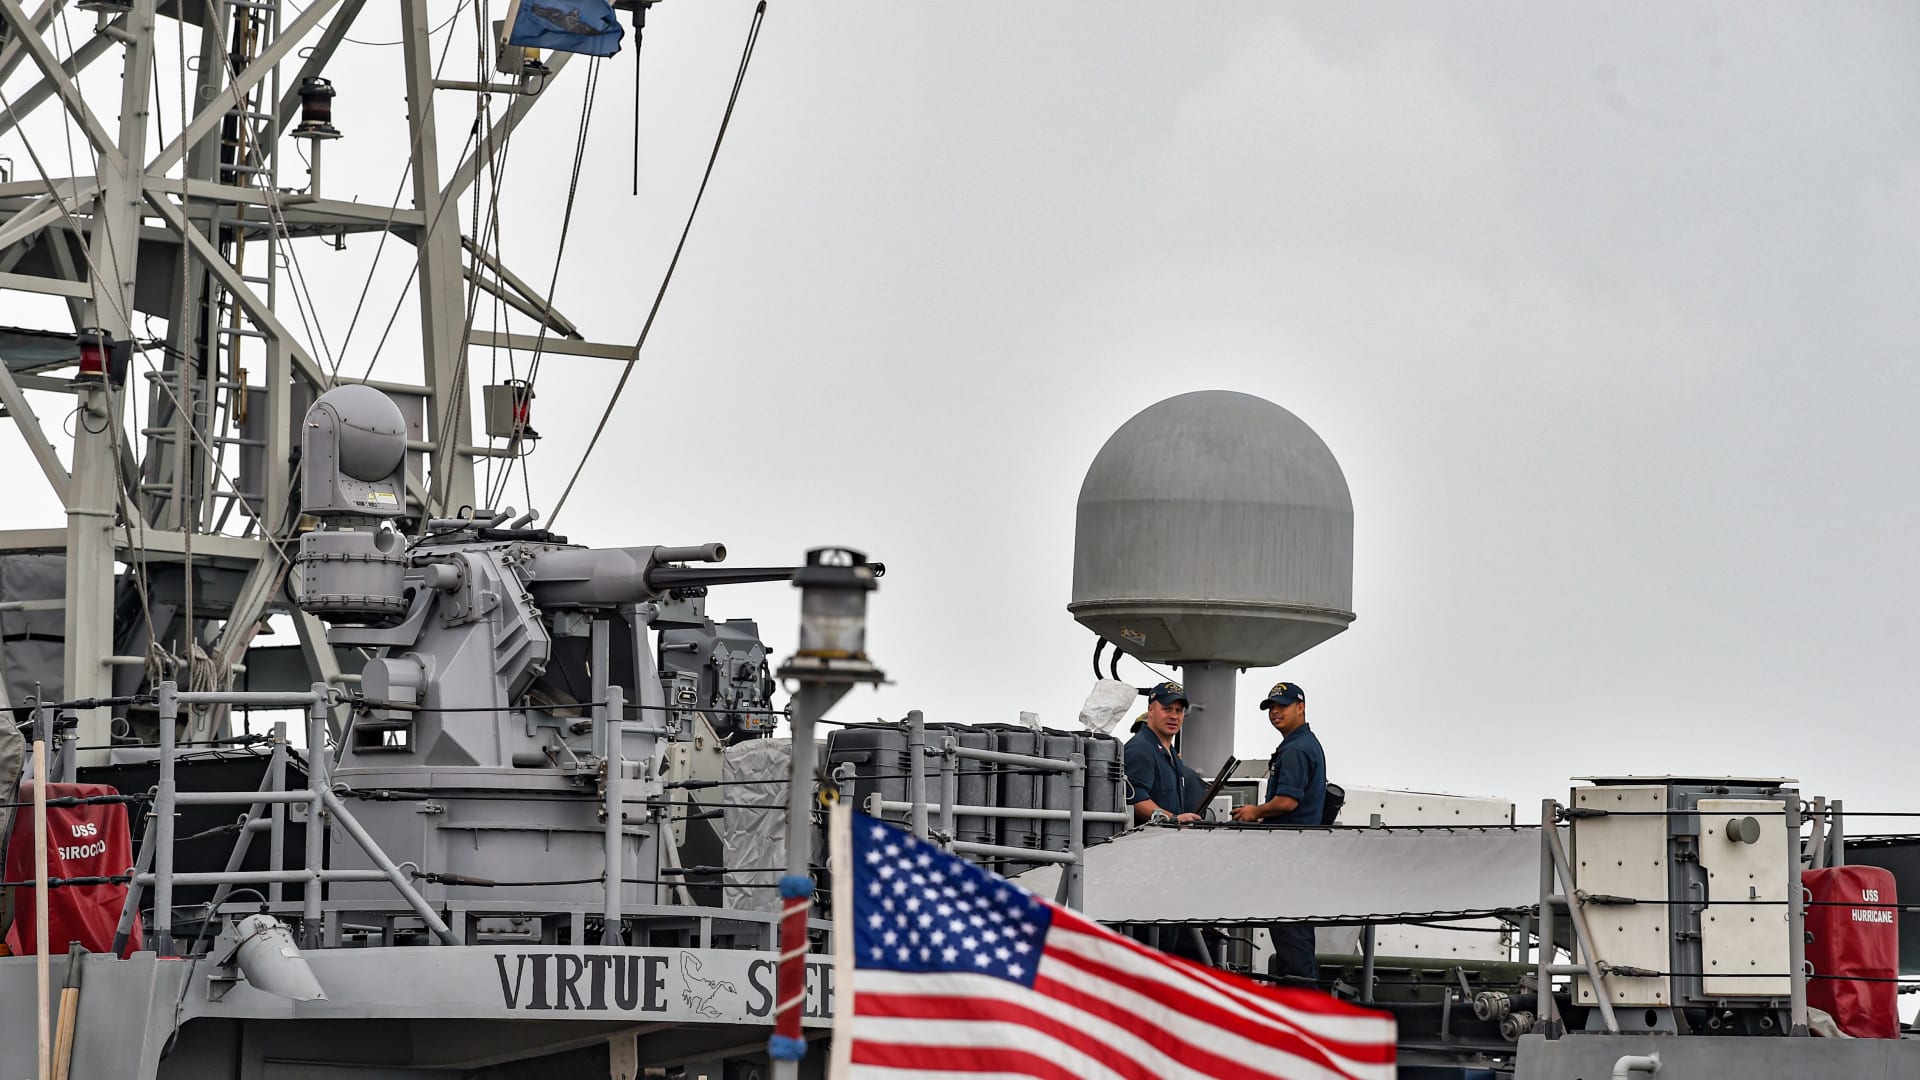 بحارة البحرية الأمريكية على متن سفينة دورية أثناء رسوهم في مقر قيادة الأسطول الأمريكي الخامس في العاصمة البحرينية المنامة - 17 ديسمبر 2019